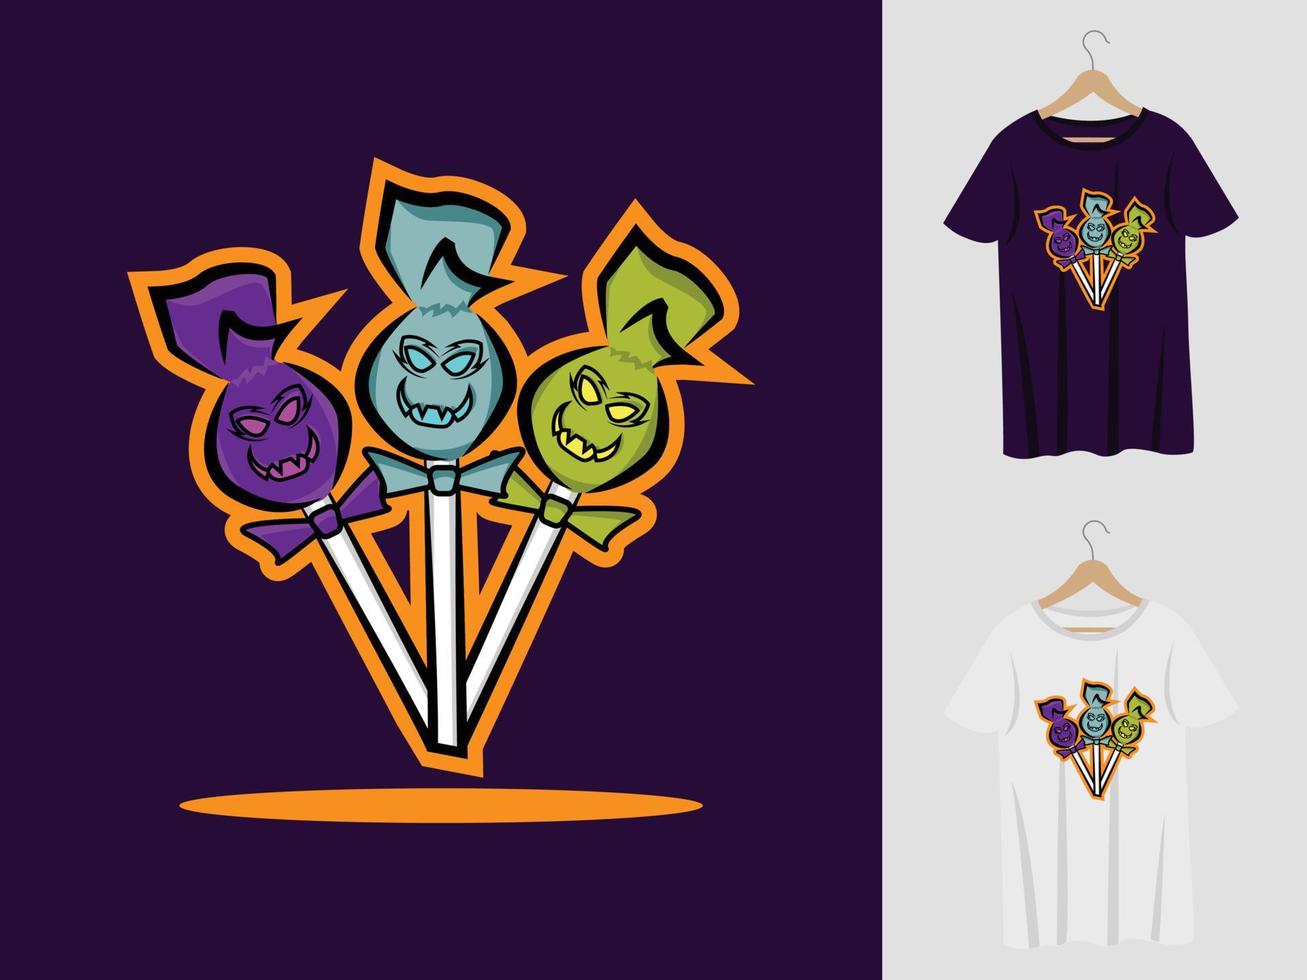 diseño de mascota de halloween de caramelo de piruleta con camiseta. ilustración de piruleta para fiesta de halloween y camiseta de impresión vector